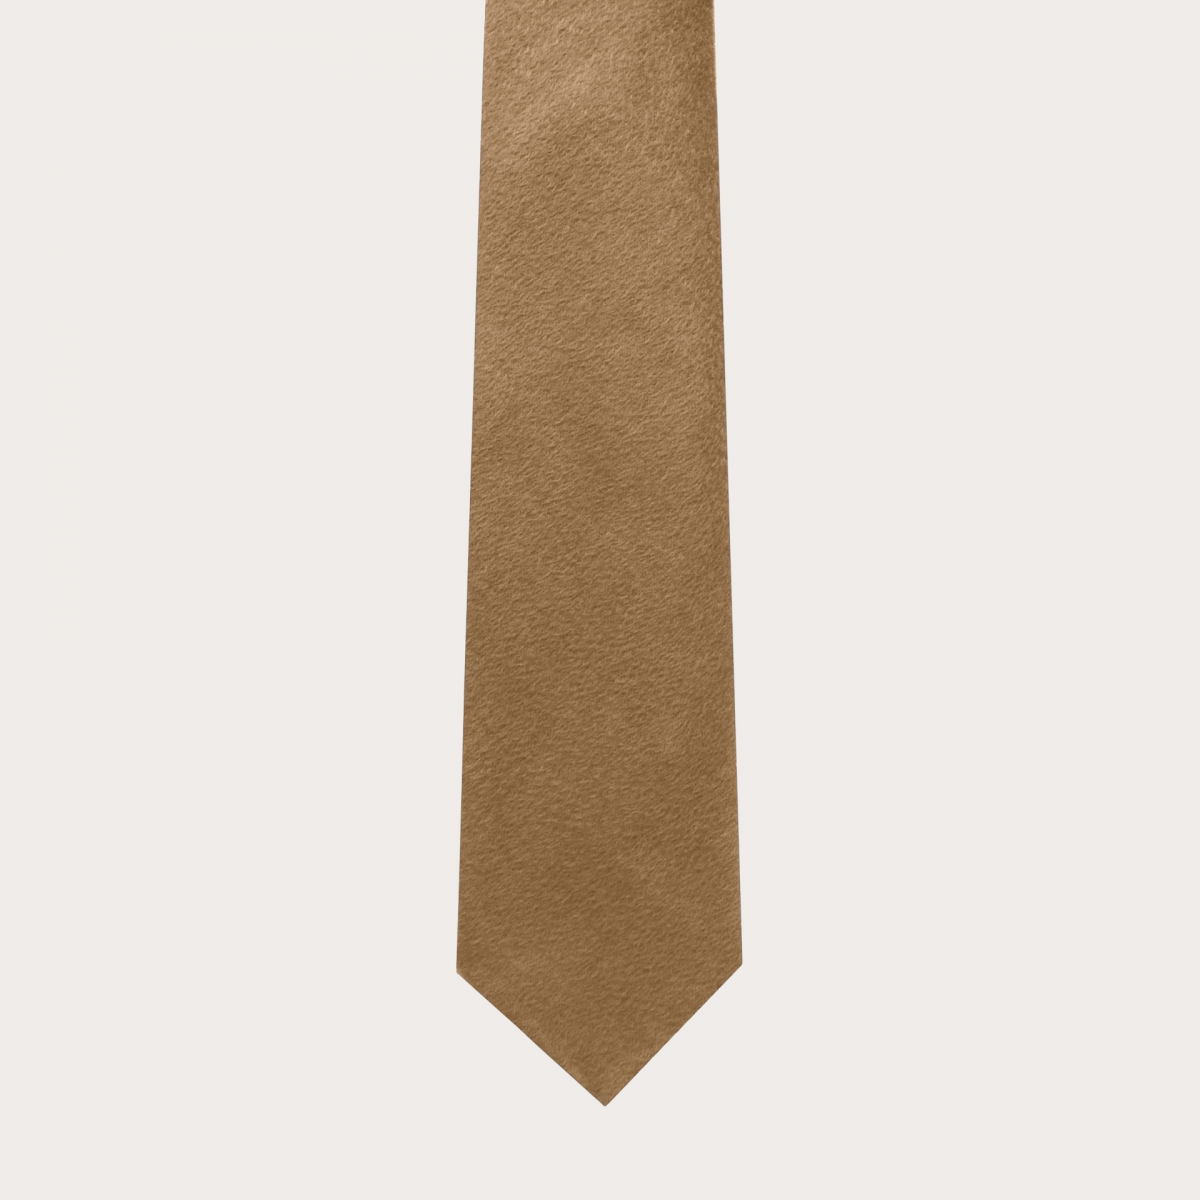 Cravatta sfoderata in cachemire e cotone, beige